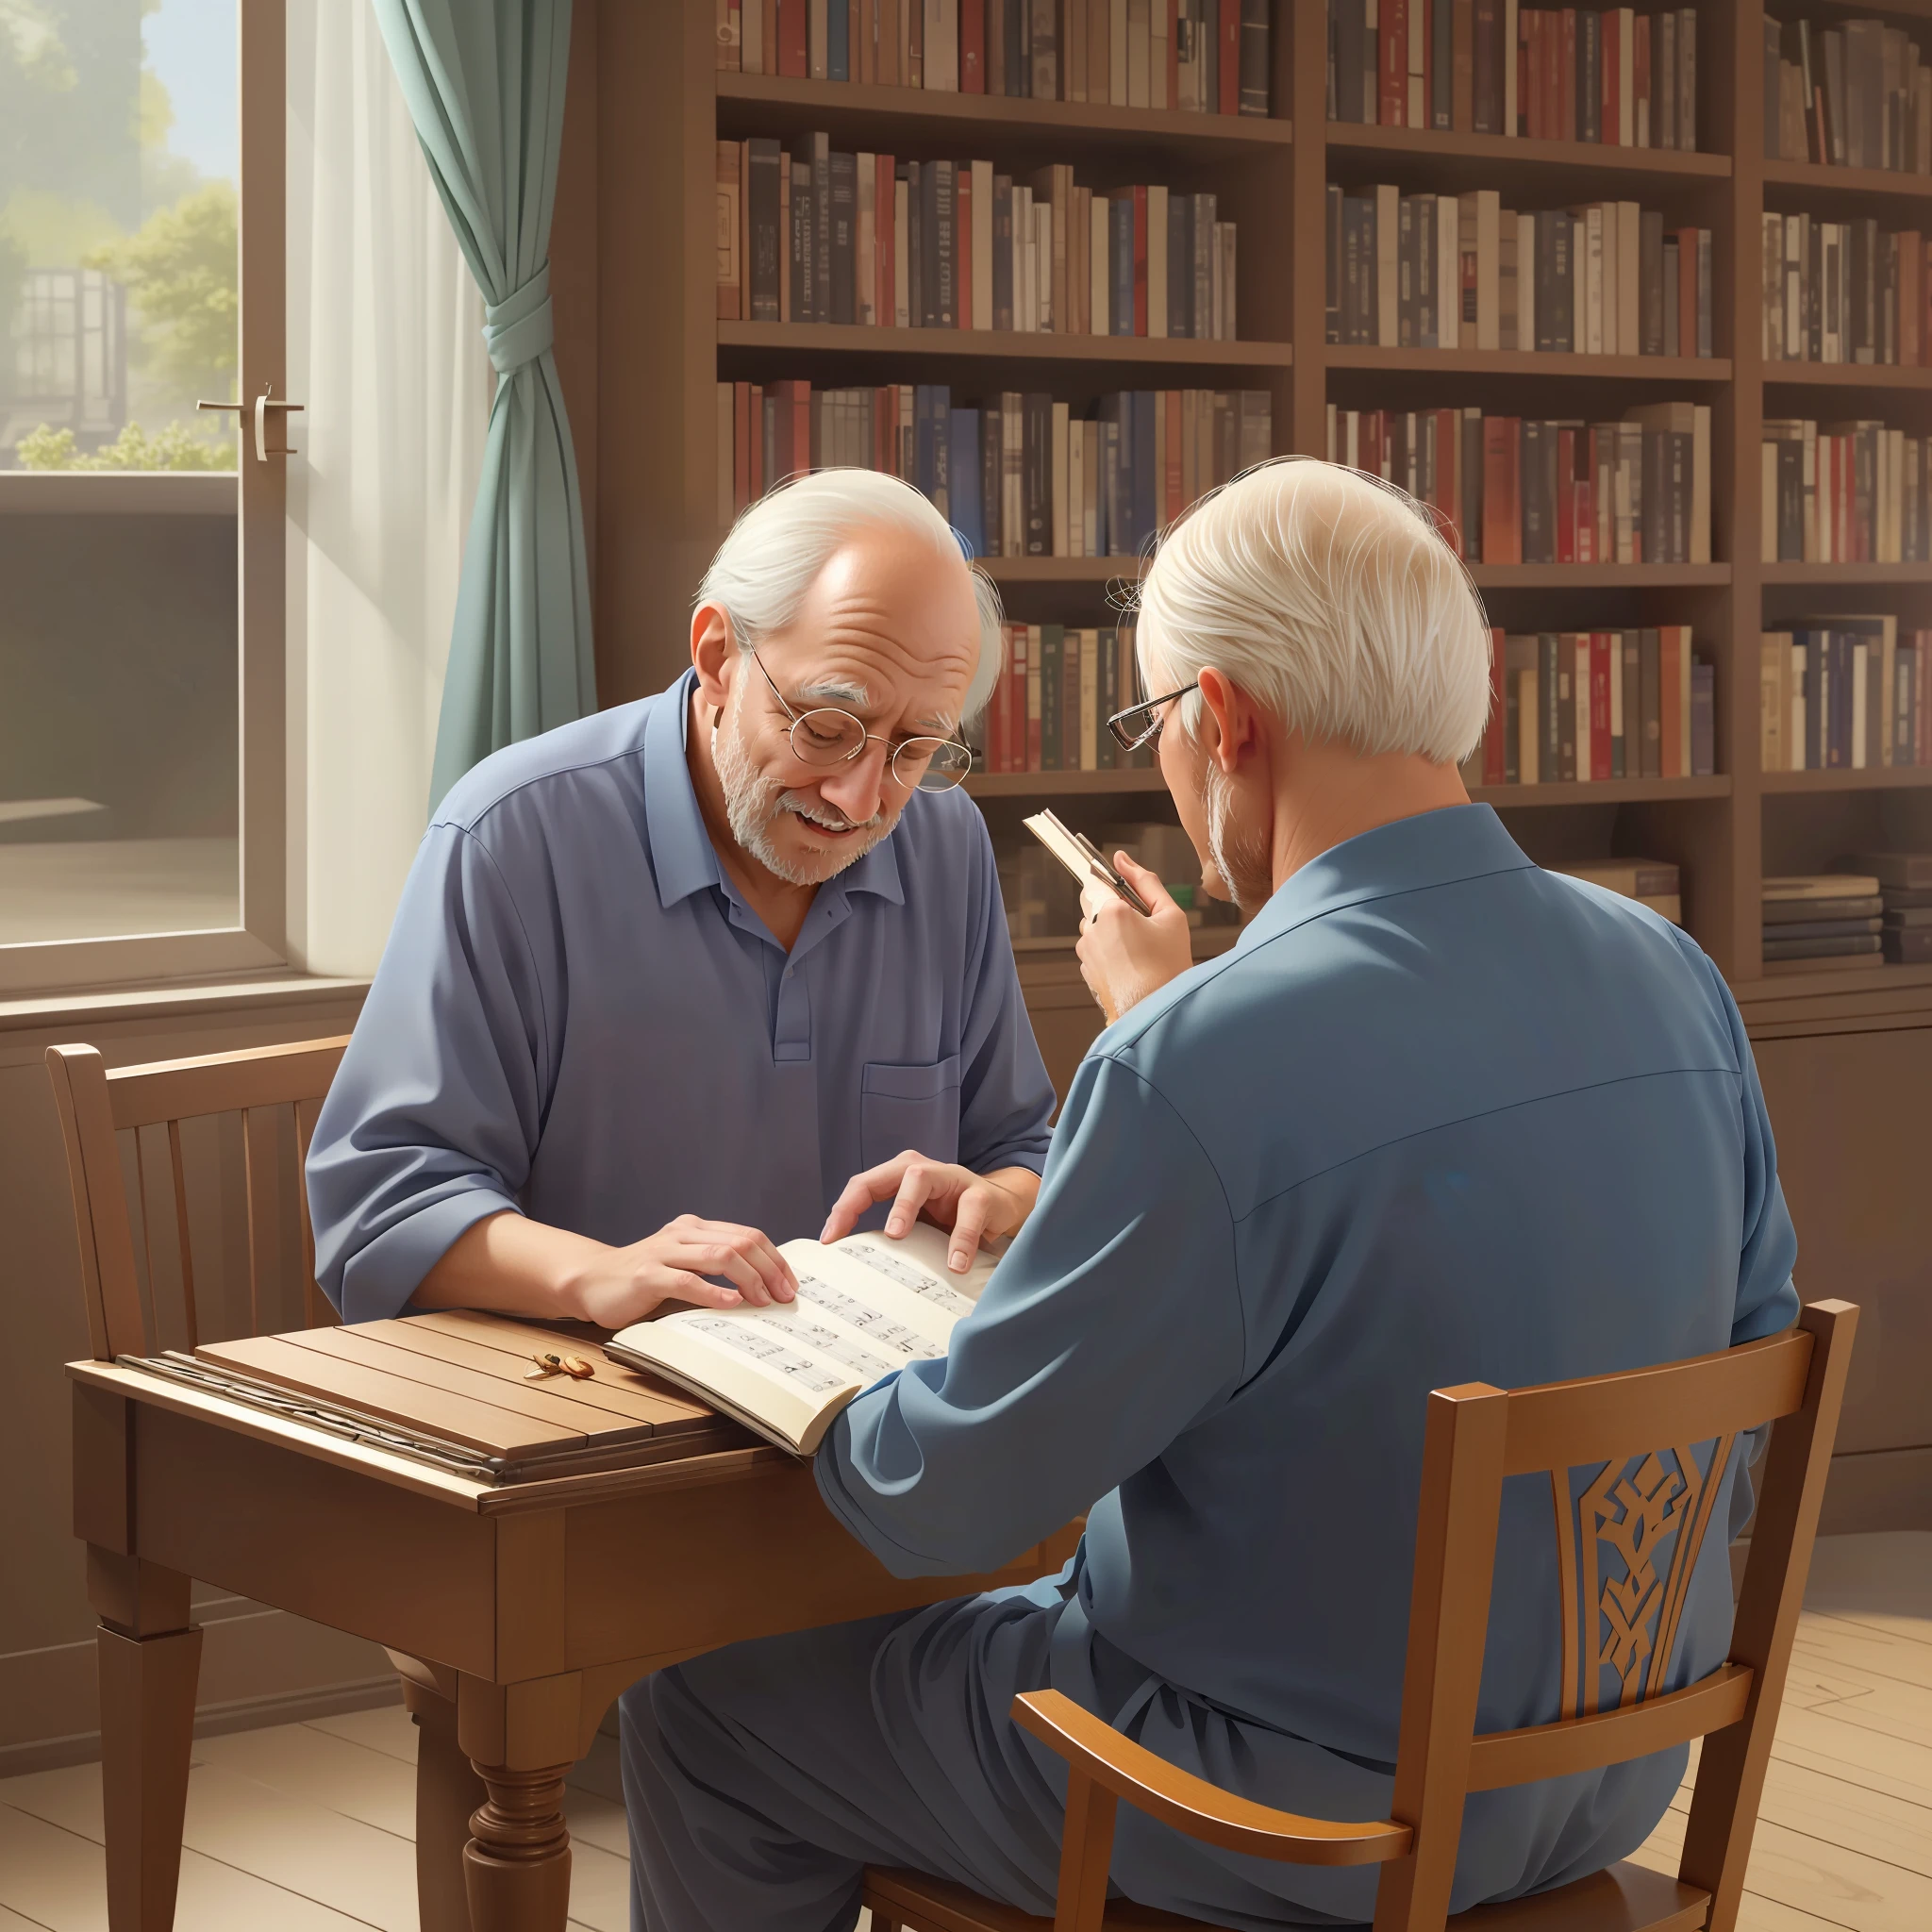 Zwei ältere Männer sitzen an einem Tisch mit einem Buch und einem Klavier, Hochwertige 3D-Illustration, Kunstwerke mit atemberaubender Detailtreue, lebendige Farben und unglaublicher Realismus.